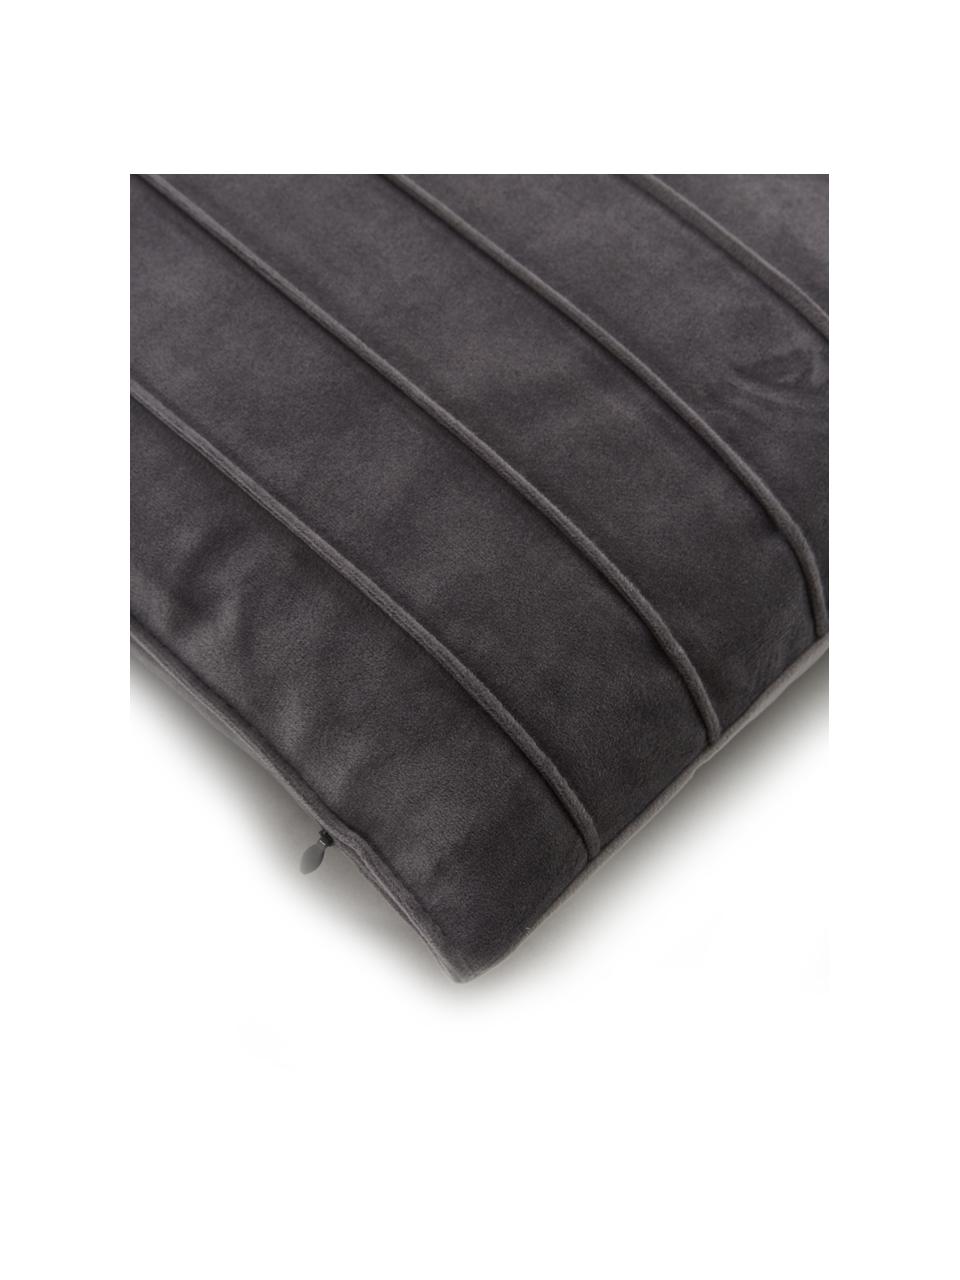 Federa arredo in velluto grigio scuro con motivo strutturato Lola, Velluto (100% poliestere), Grigio scuro, Larg. 30 x Lung. 50 cm